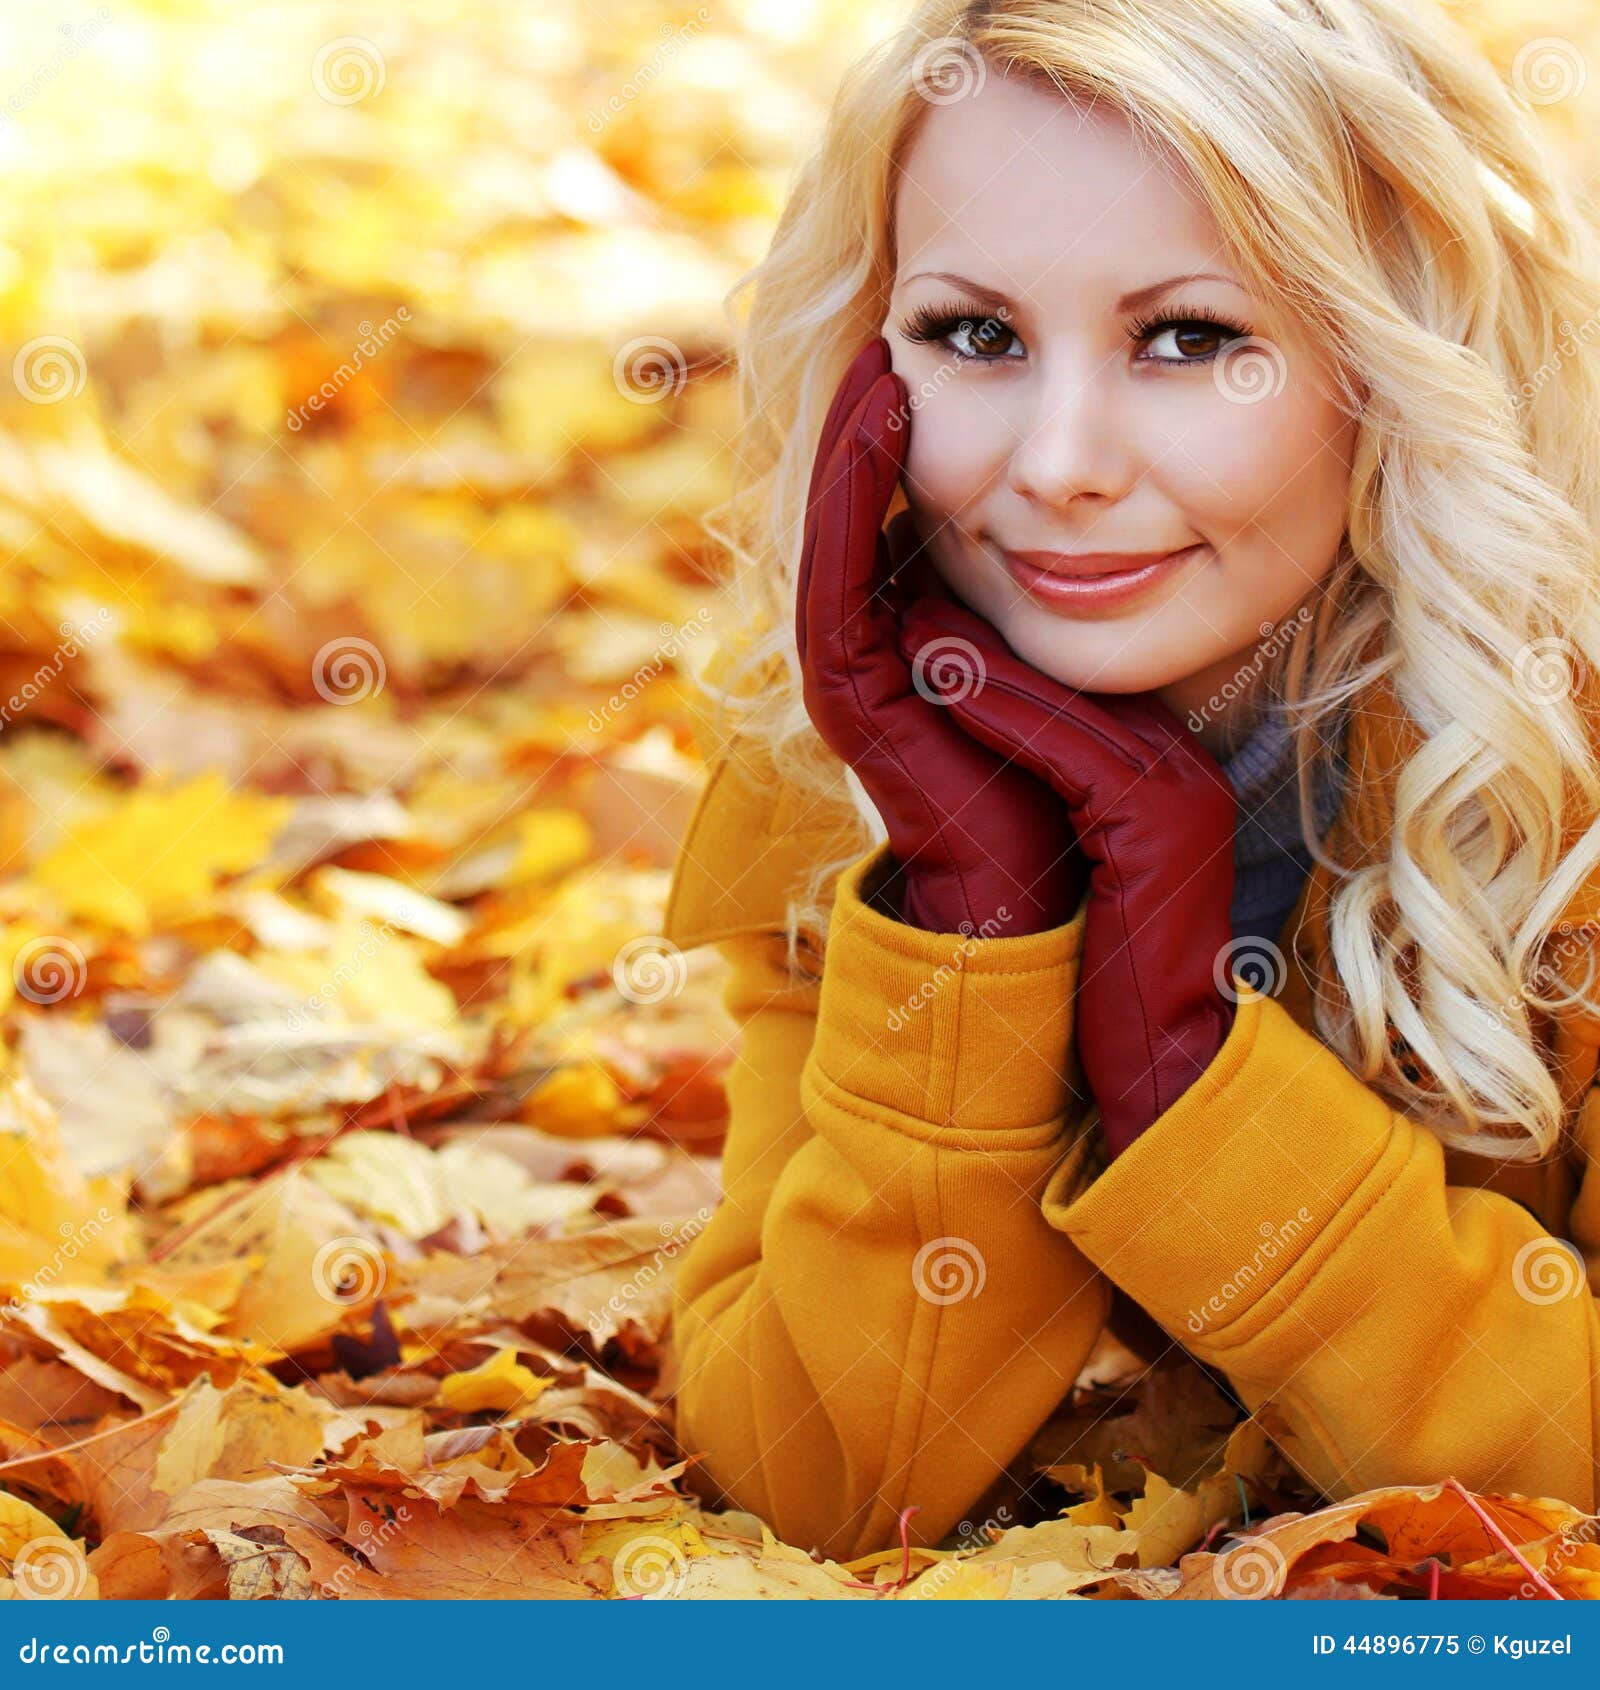 blonde true autumn